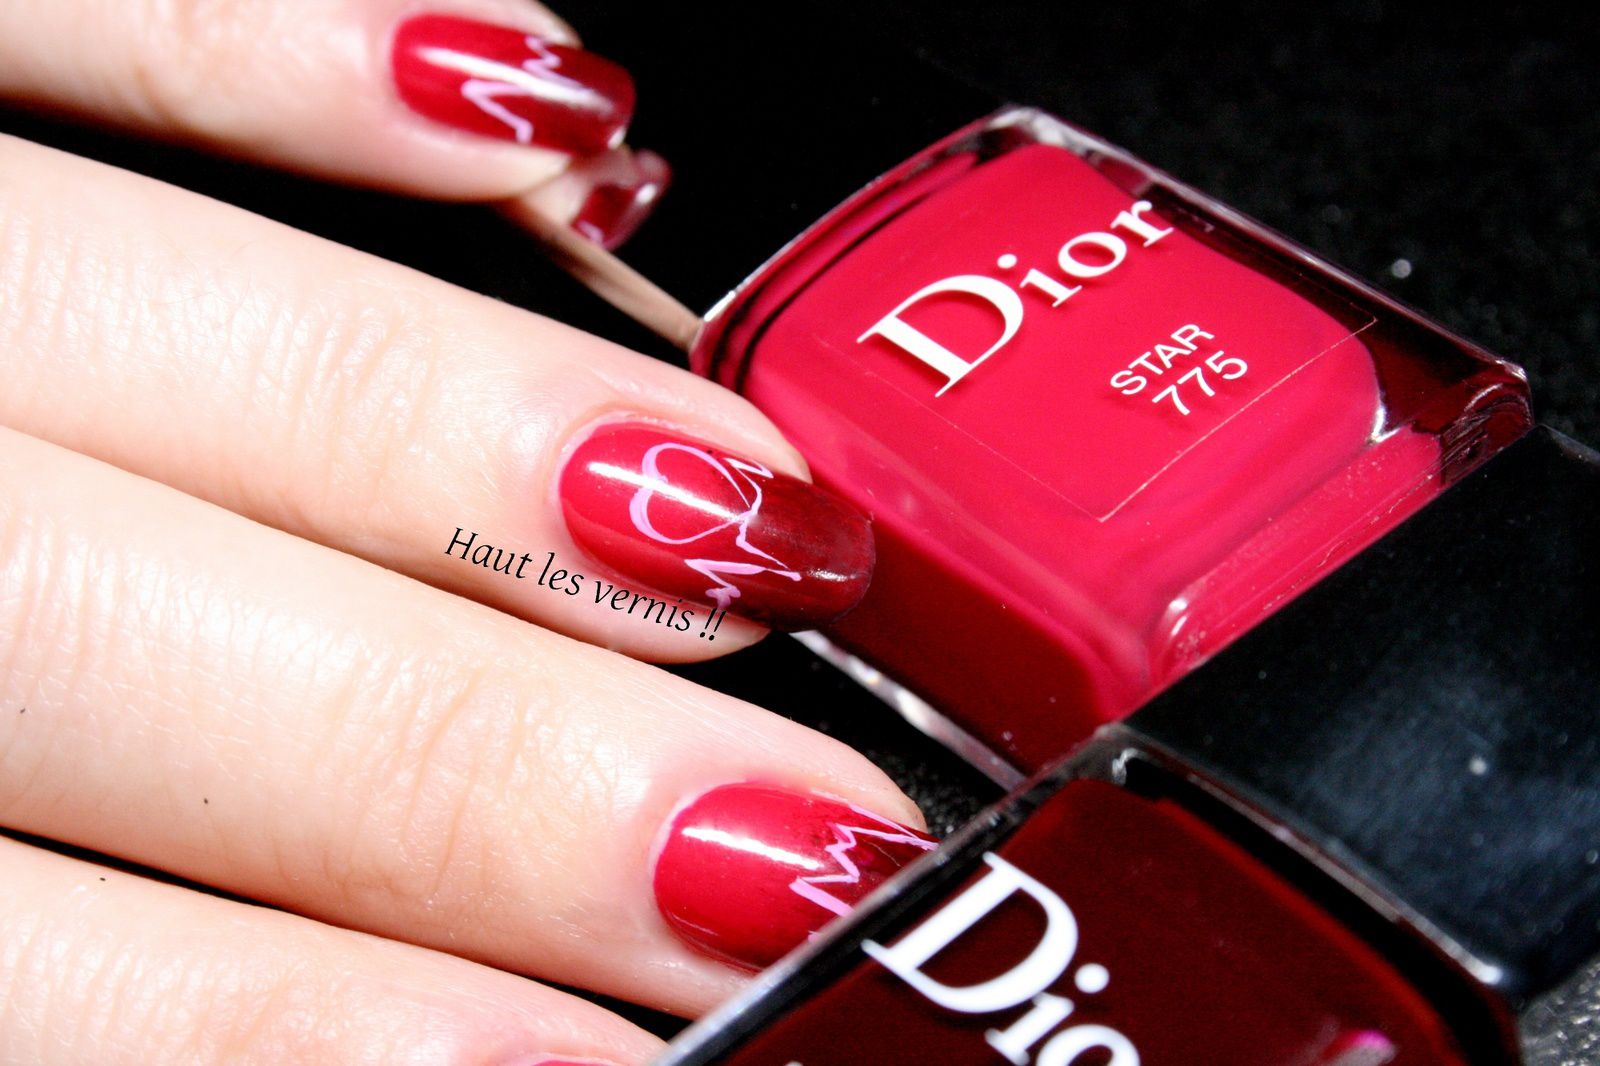 Dior Star..Mon love nail art - Haut les Vernis!!!